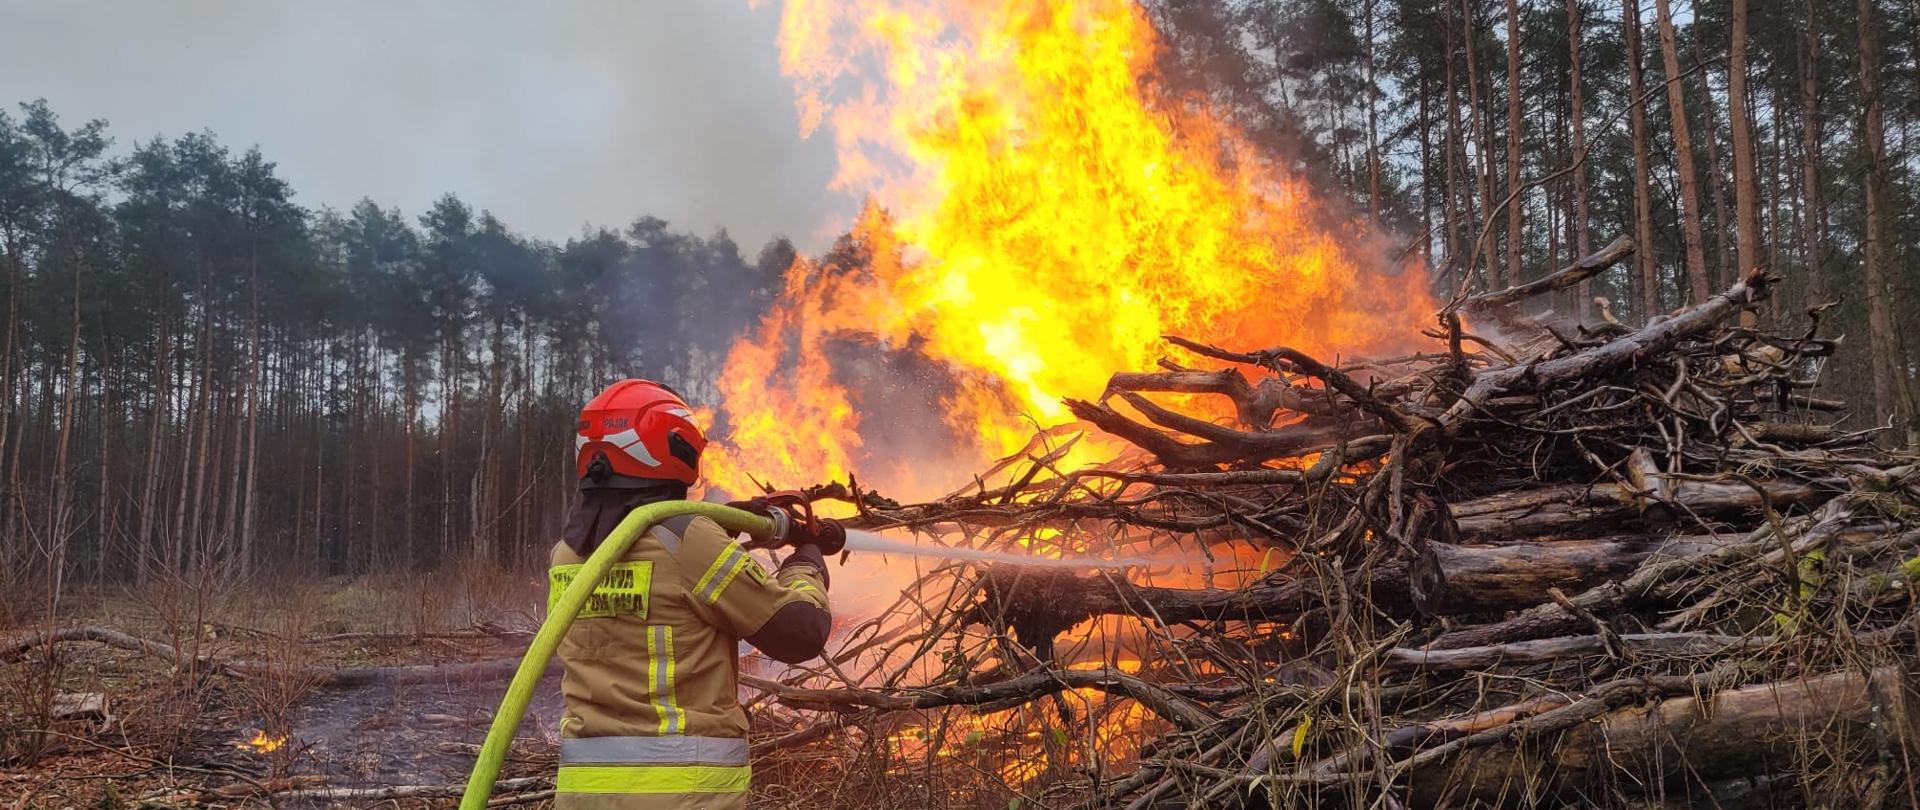 strażak gaszący pożar gałęzi